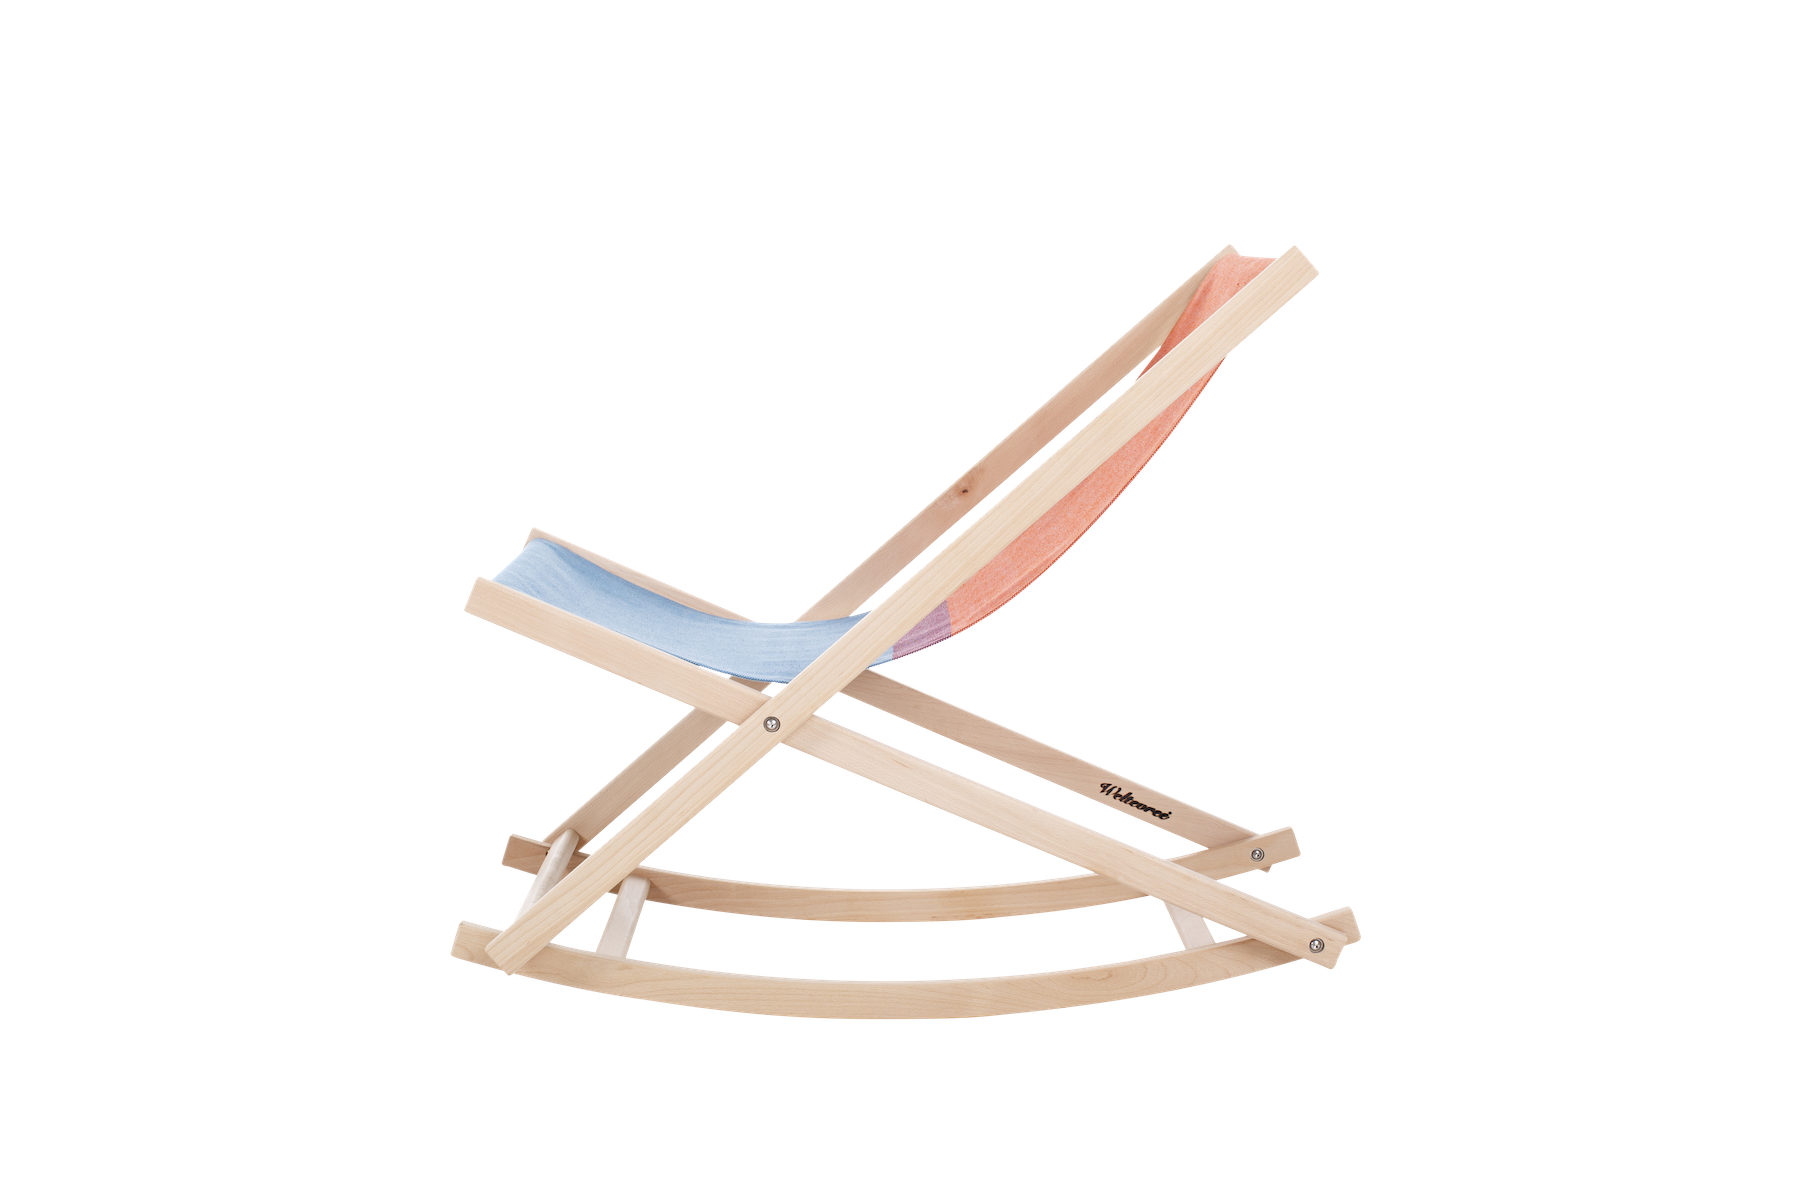 Schaukelstuhl Beach-chair, rot / blau, Weltevree